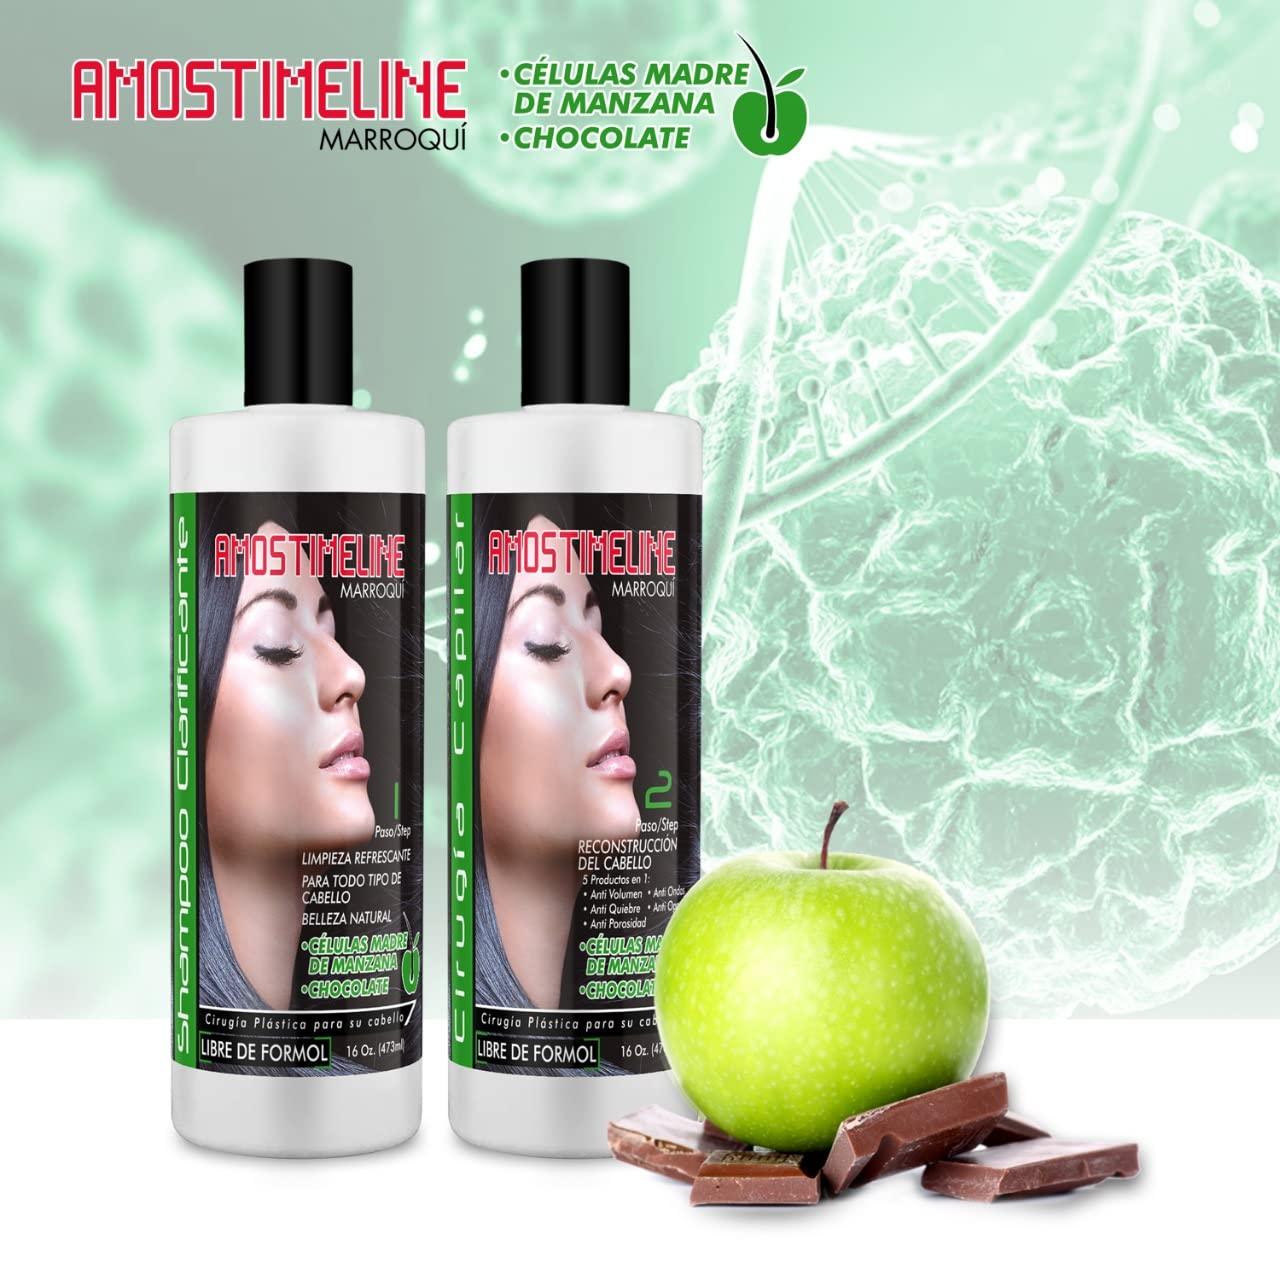 Imagen de ingredientes clave de la Cirugía Capilar de AMOSTIMELINE: manzana y chocolate, destacando su importancia en la fórmula del tratamiento para un cabello más saludable